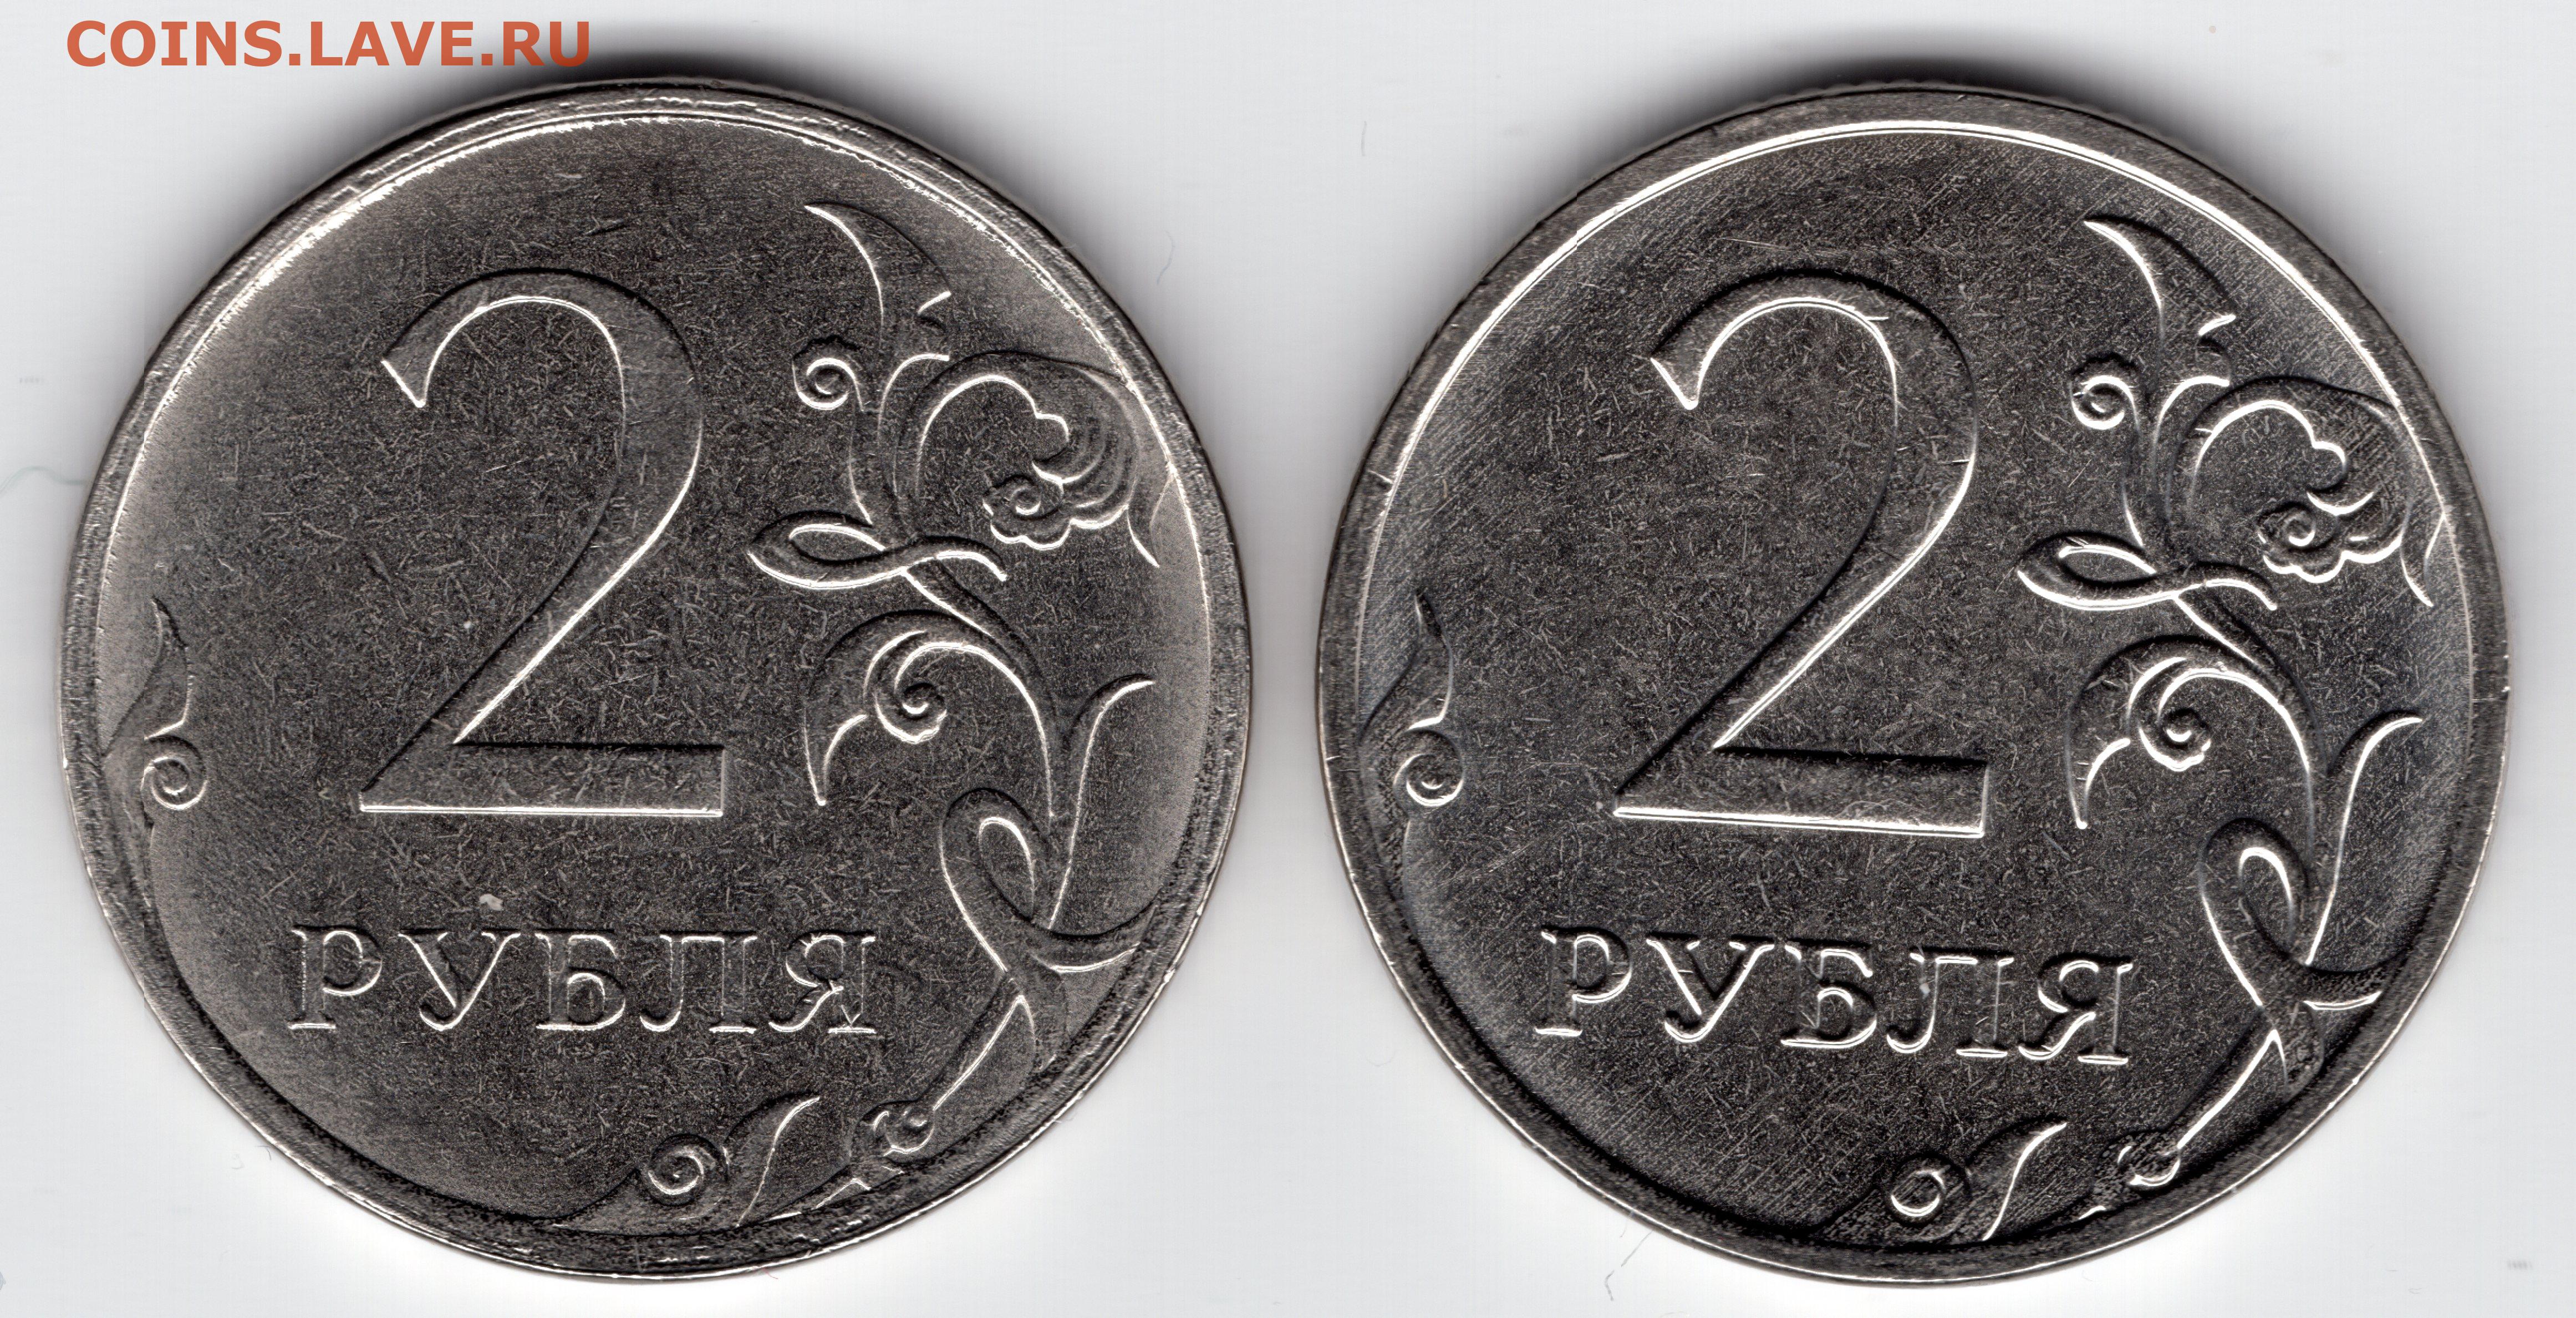 80 рублей россии. Монета два рубля. Брак монеты 5 рублей 2009г. 1 Рубль шт а шт б. 2 Рубля 2012 с браком.